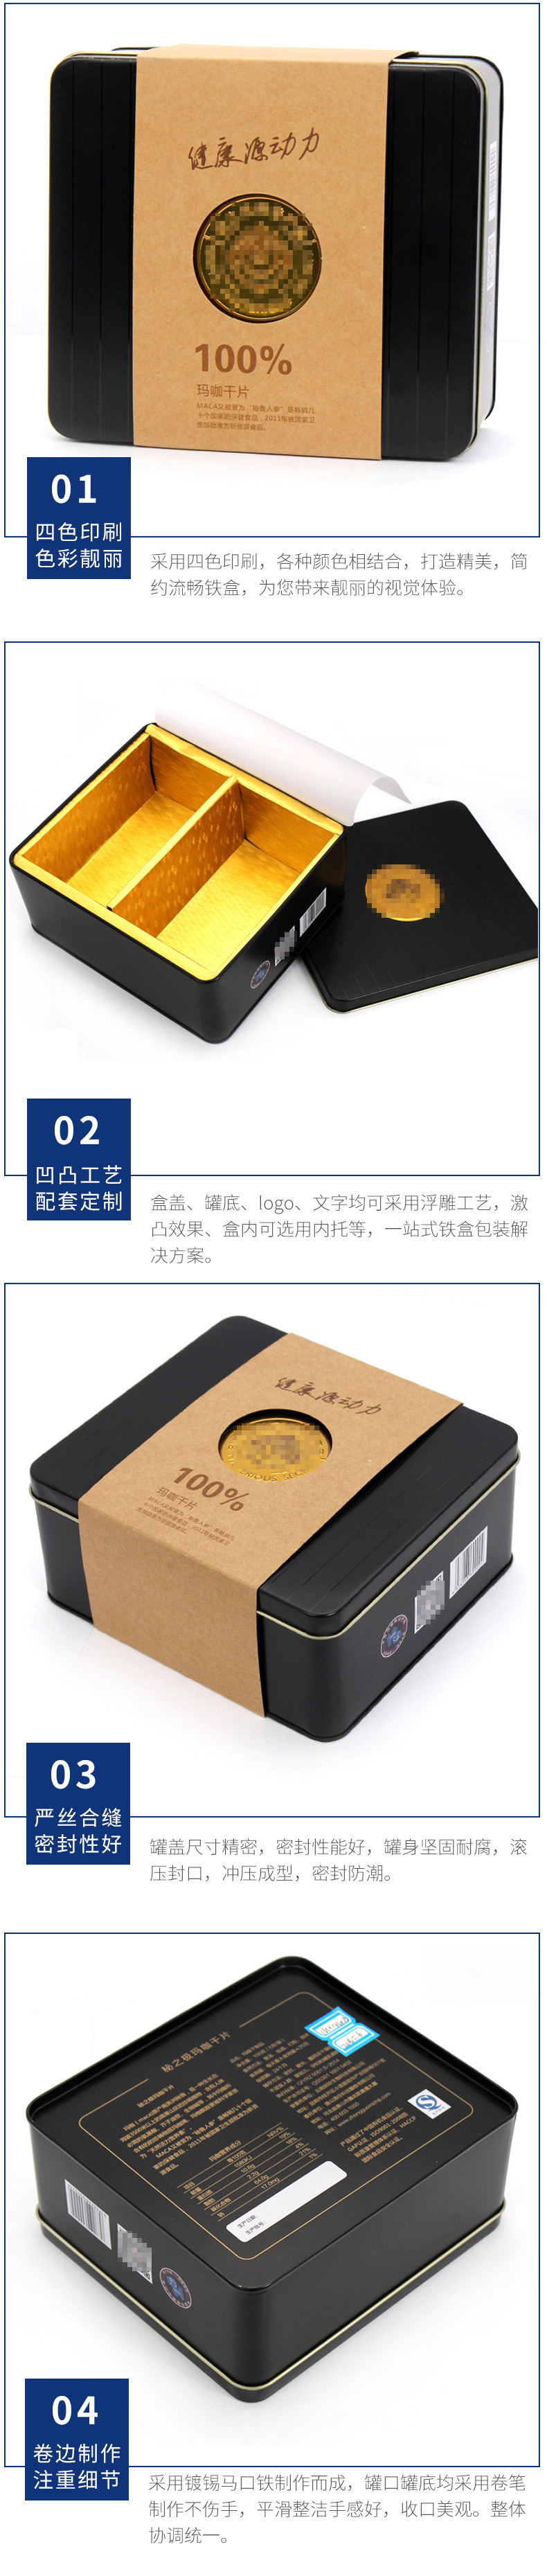 工厂生产玛咖精片铁罐长方形 黑色马口铁罐 保健品铁盒包装定制示例图14